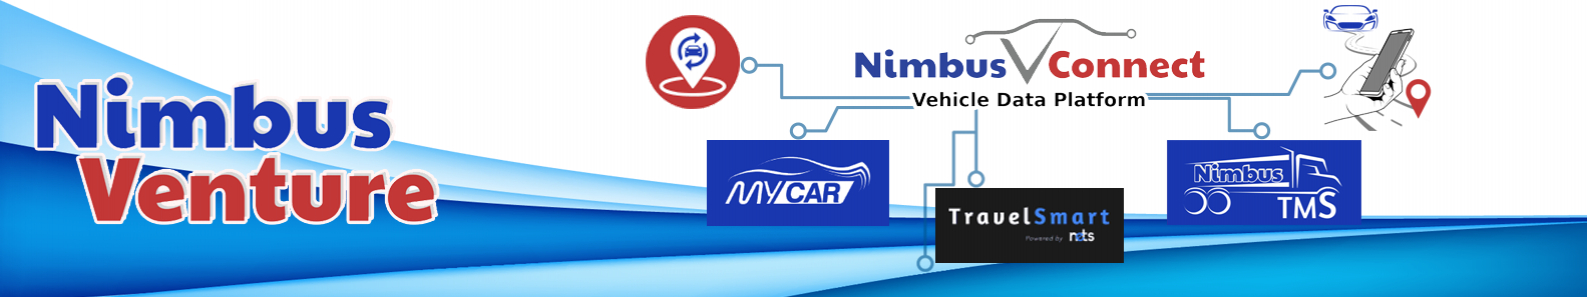 Nimbus Venture (Pvt) Ltd